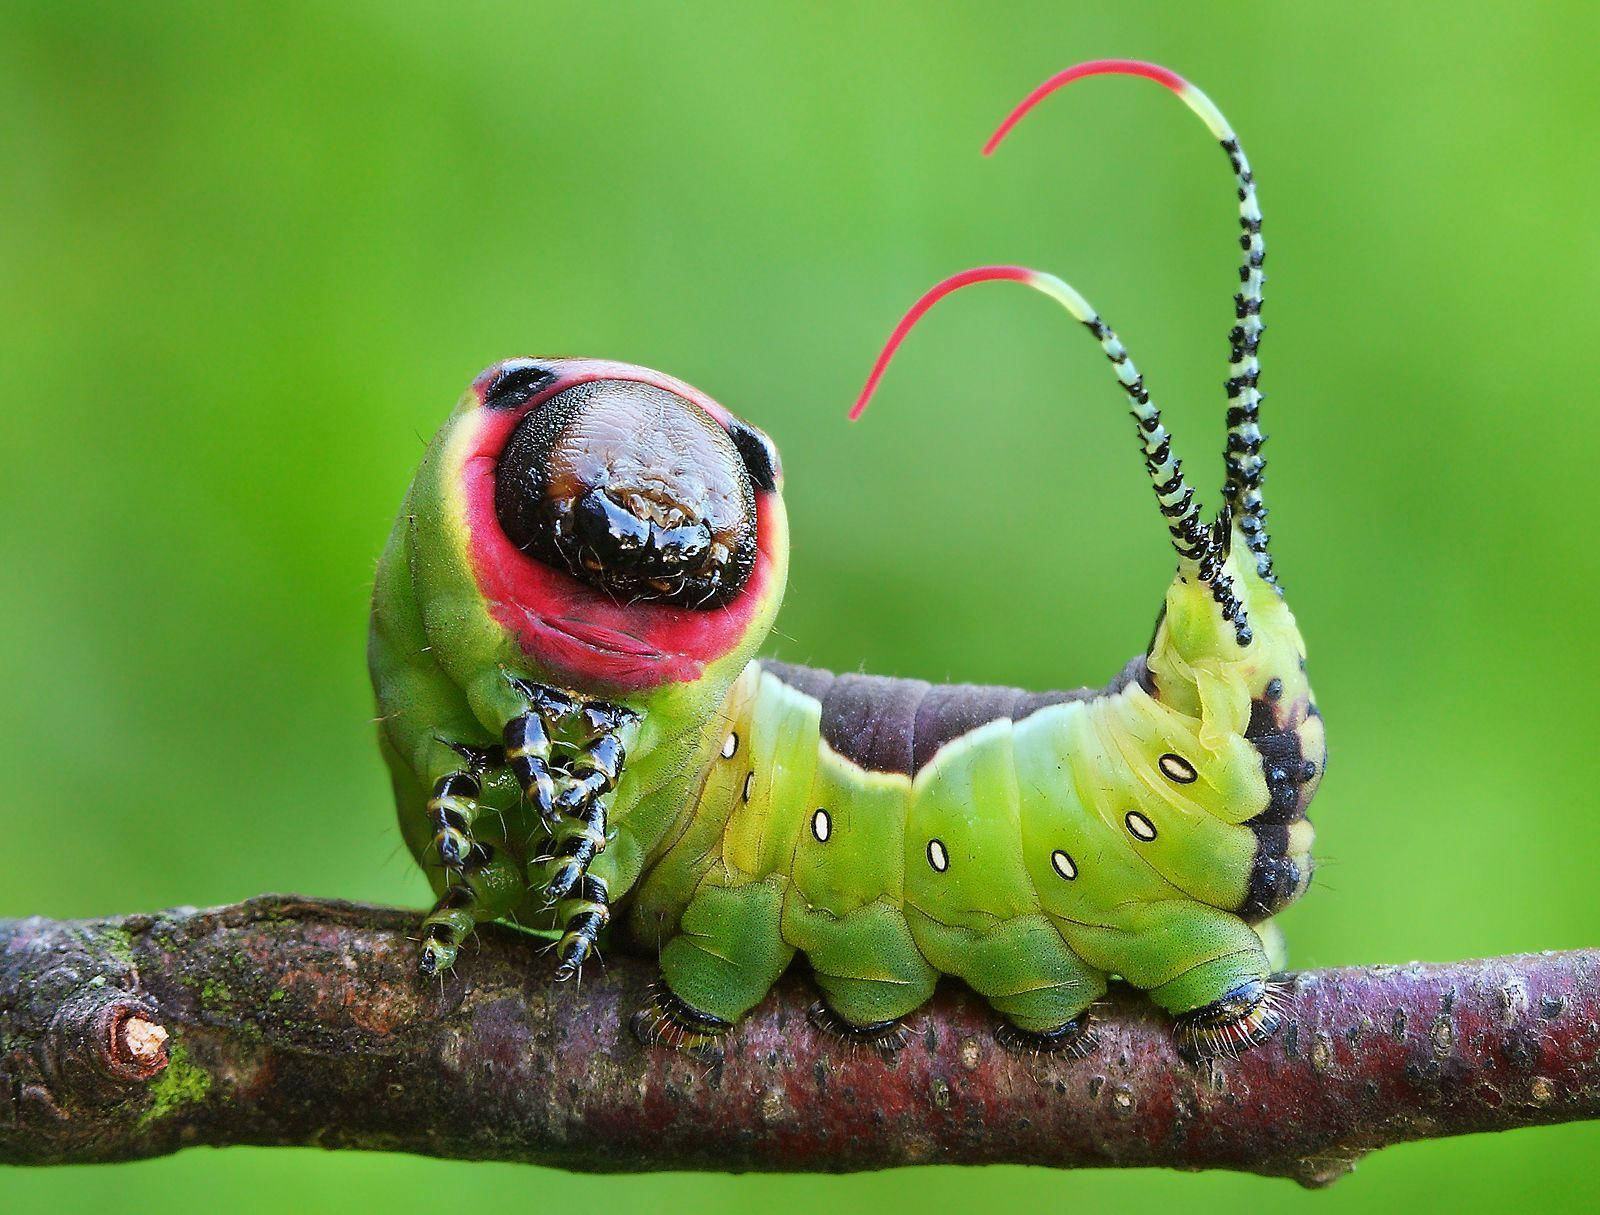 Fat Green Caterpillar On Branch